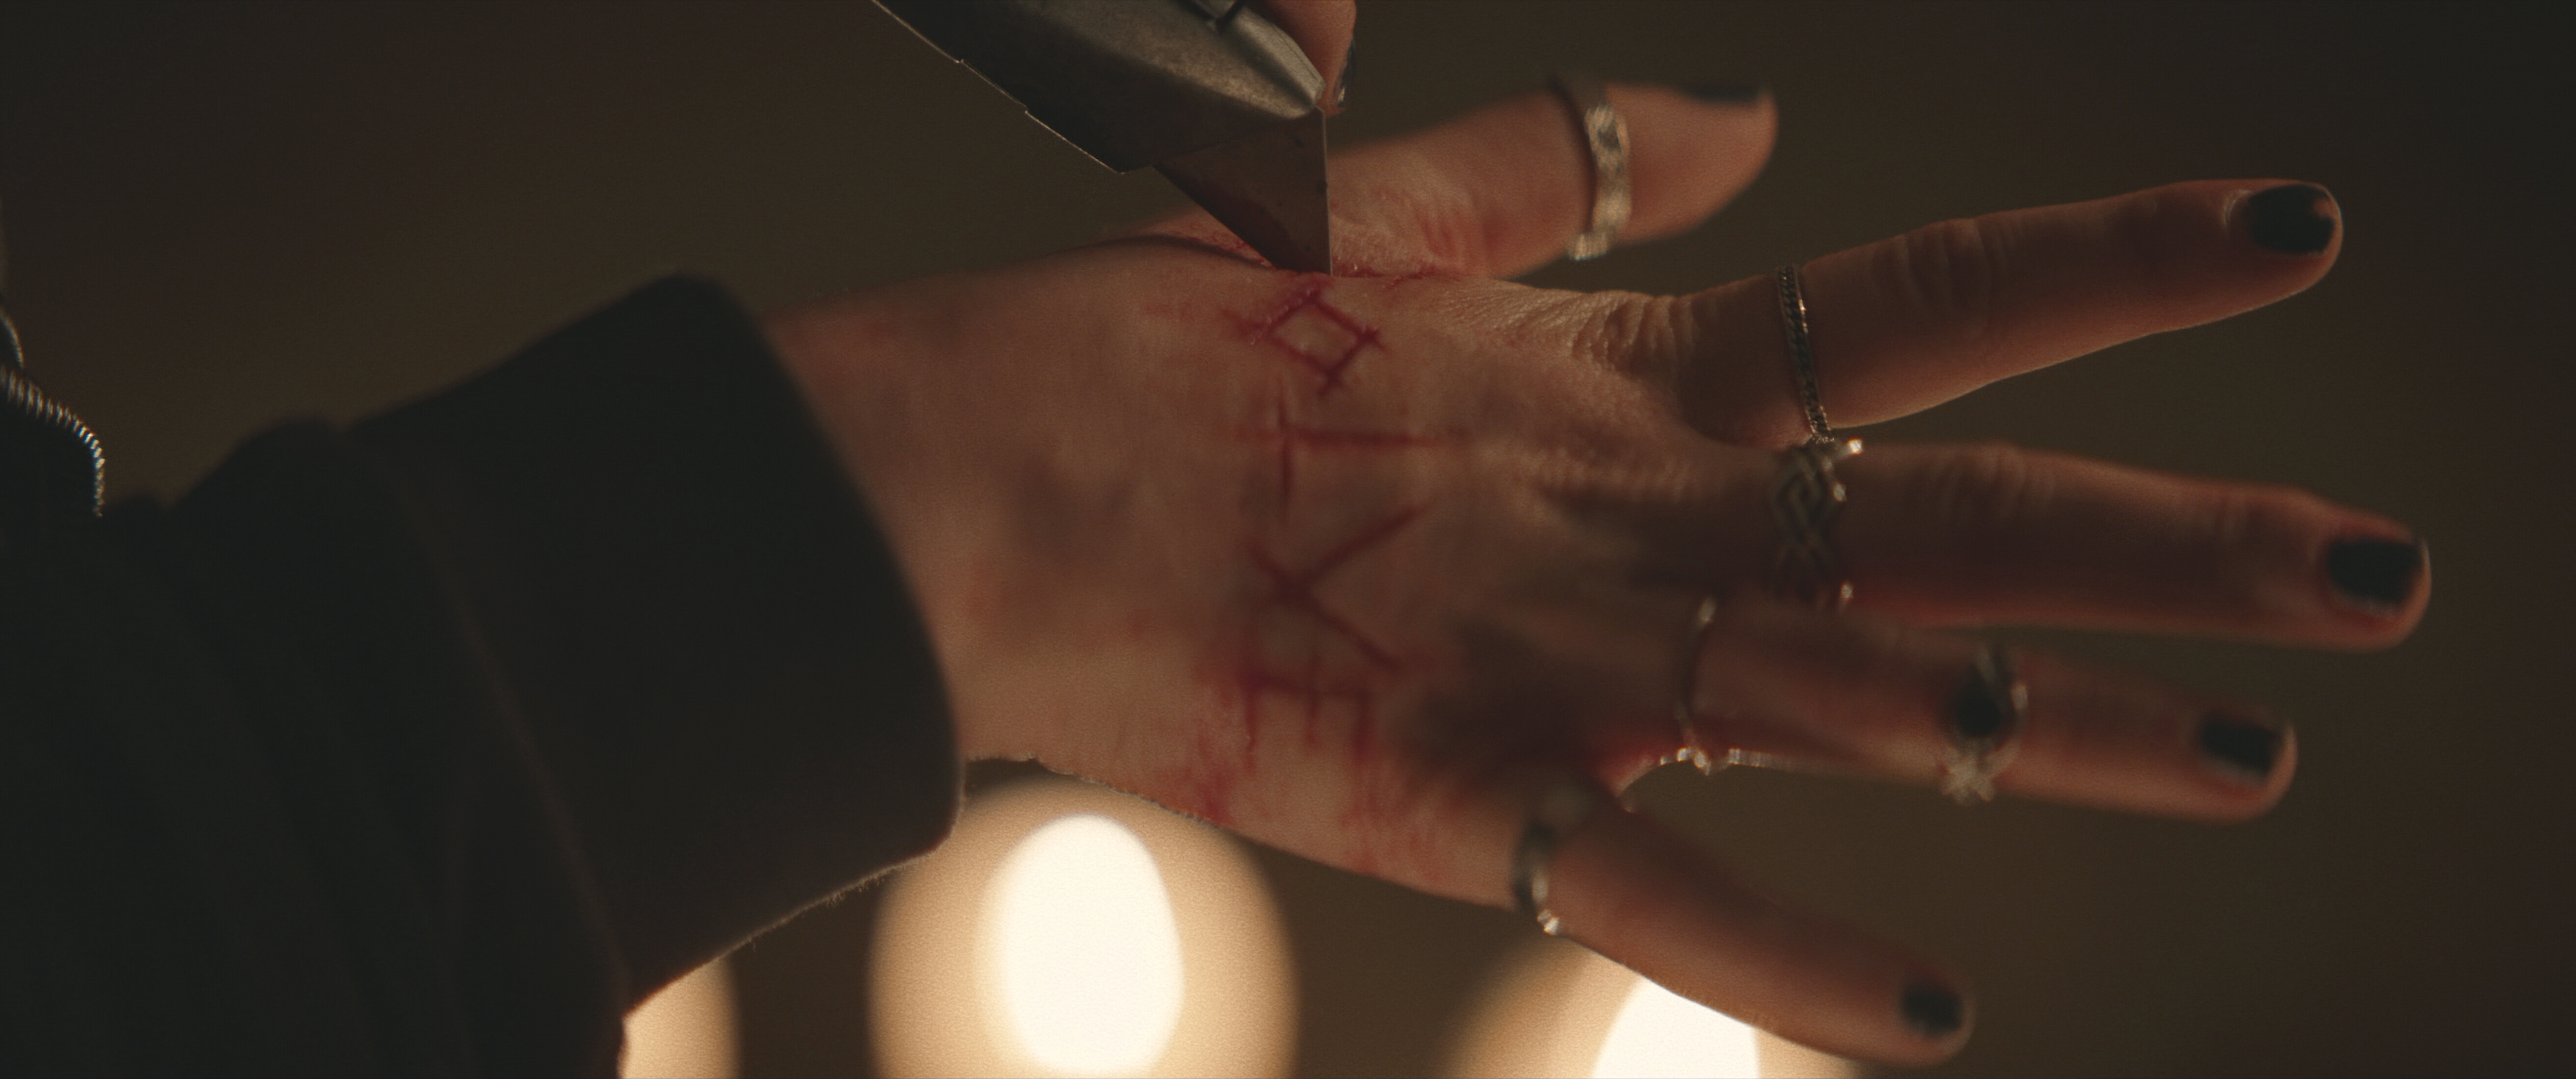 Вырезание рун ножом на руке, Кровавая надпись, Сатанинские символы